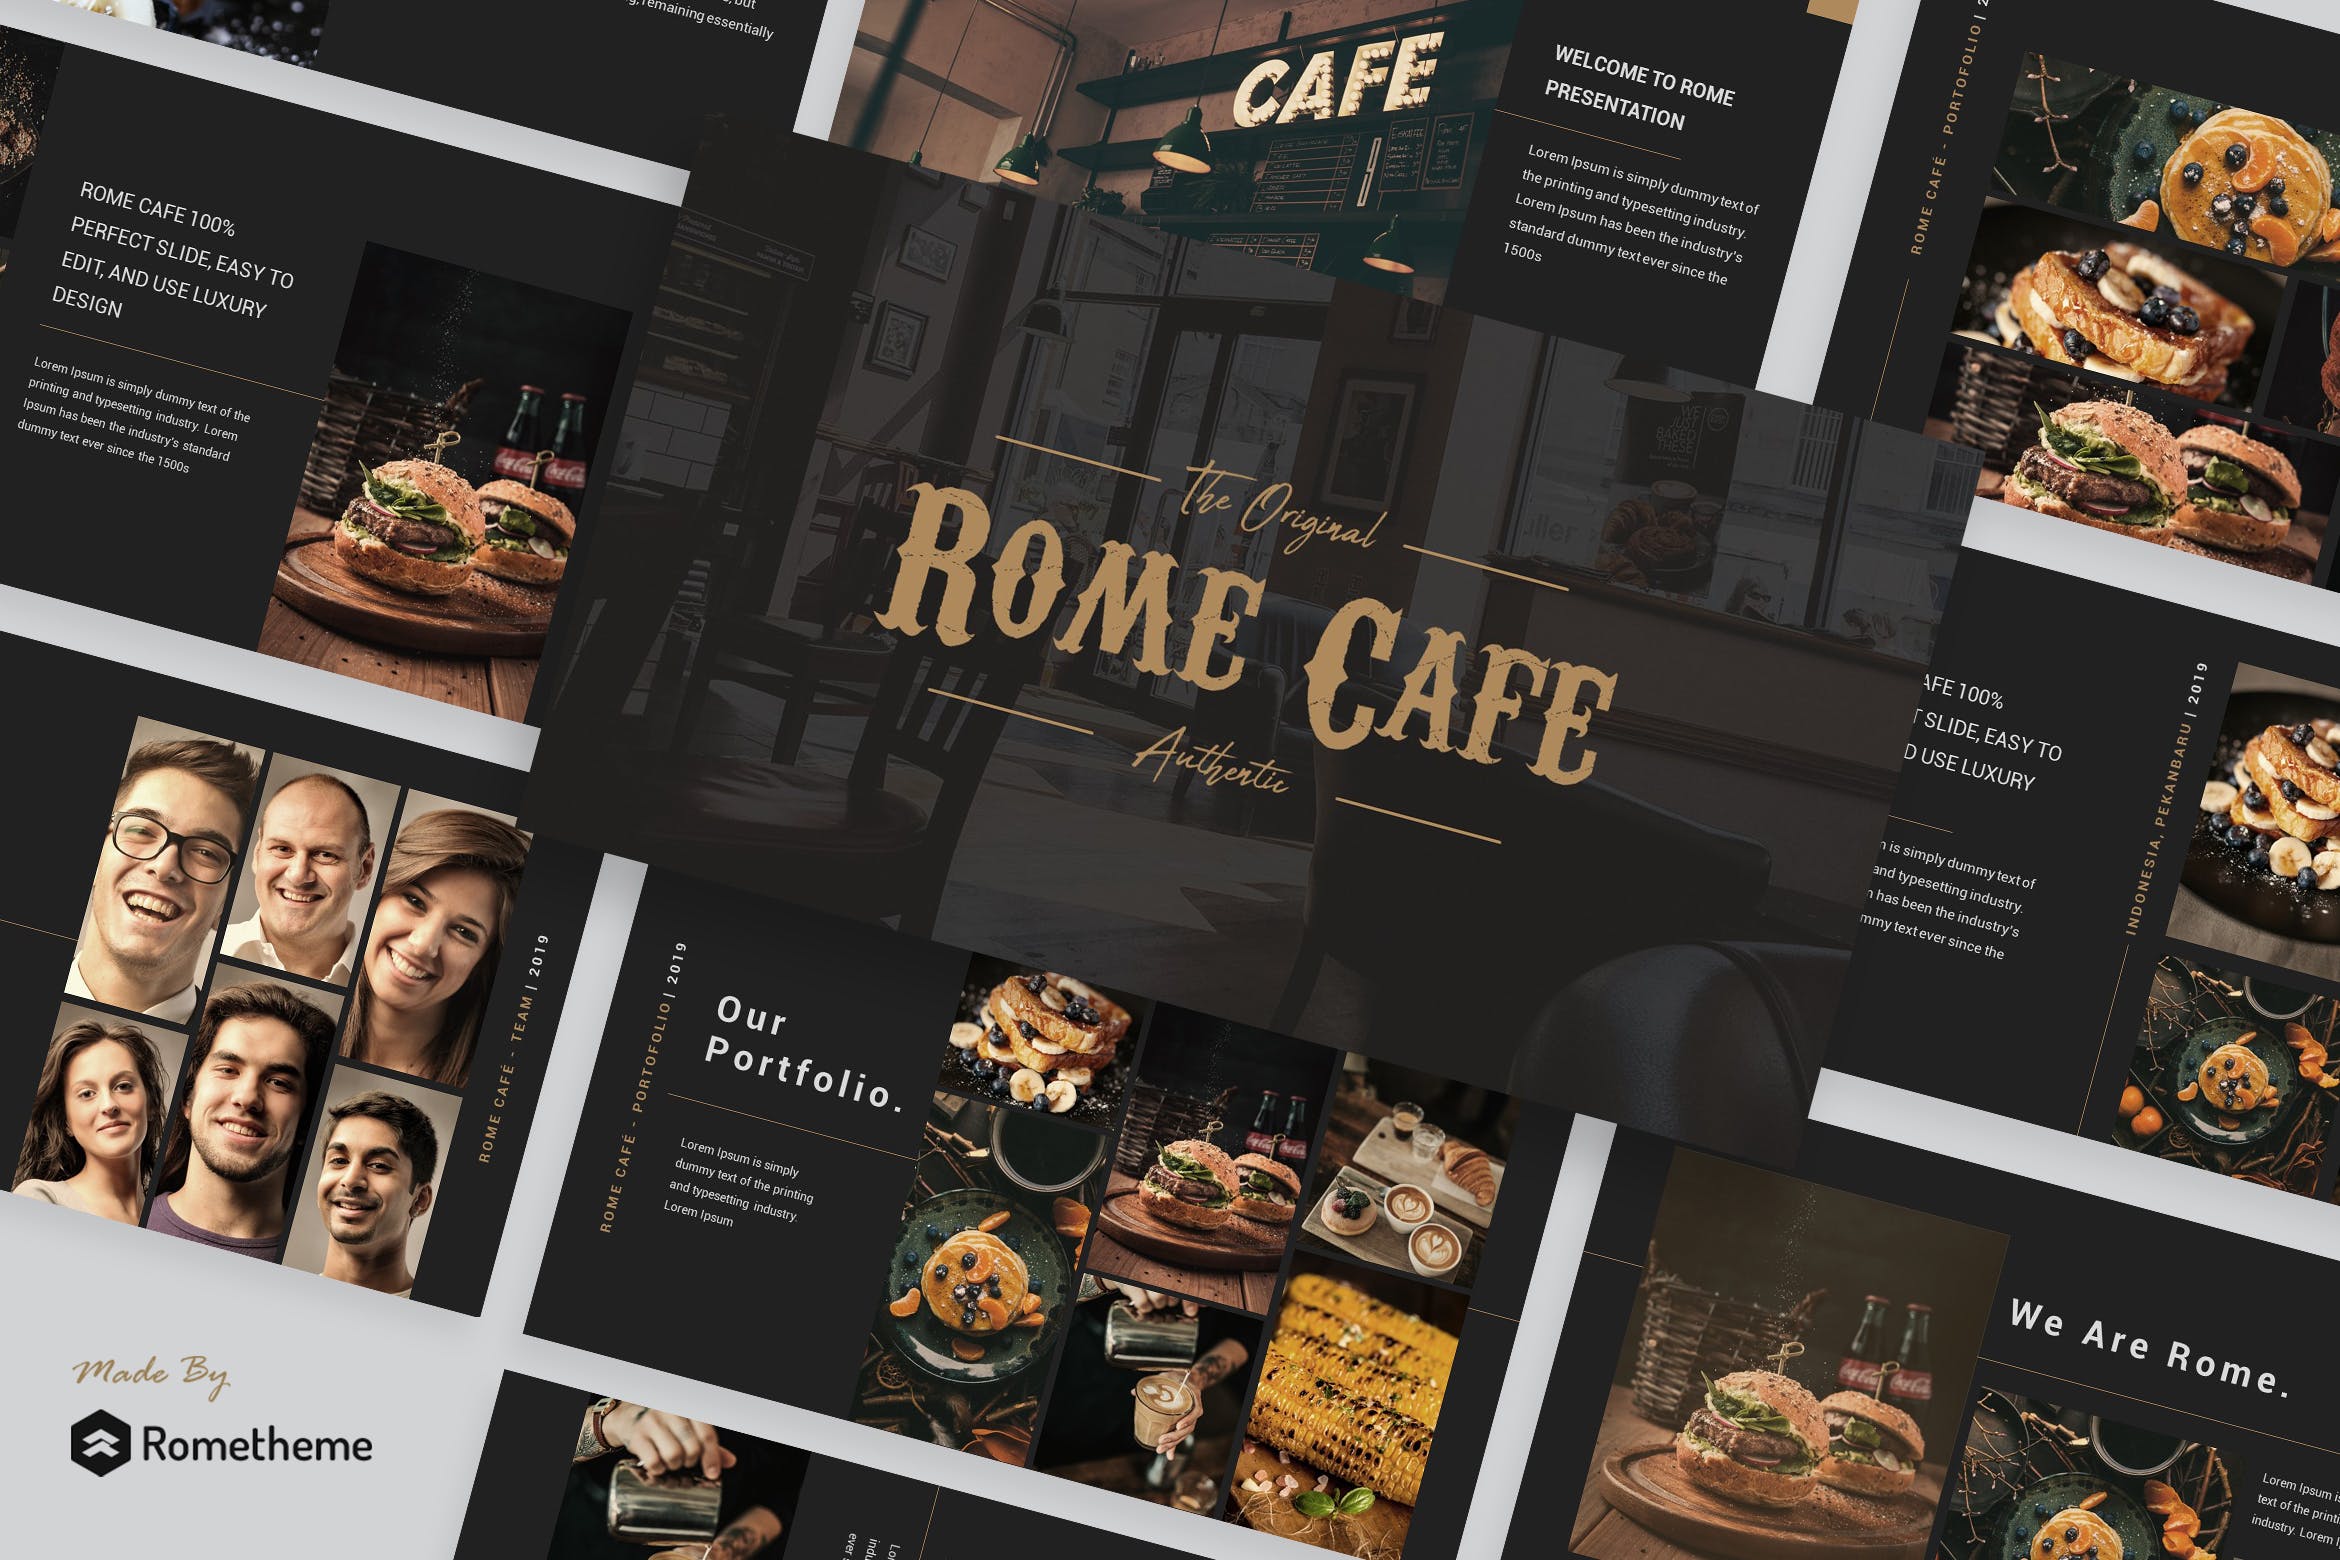 咖啡行业商业新产品宣讲PPT幻灯片模板下载Rome Cafe Presentation Template